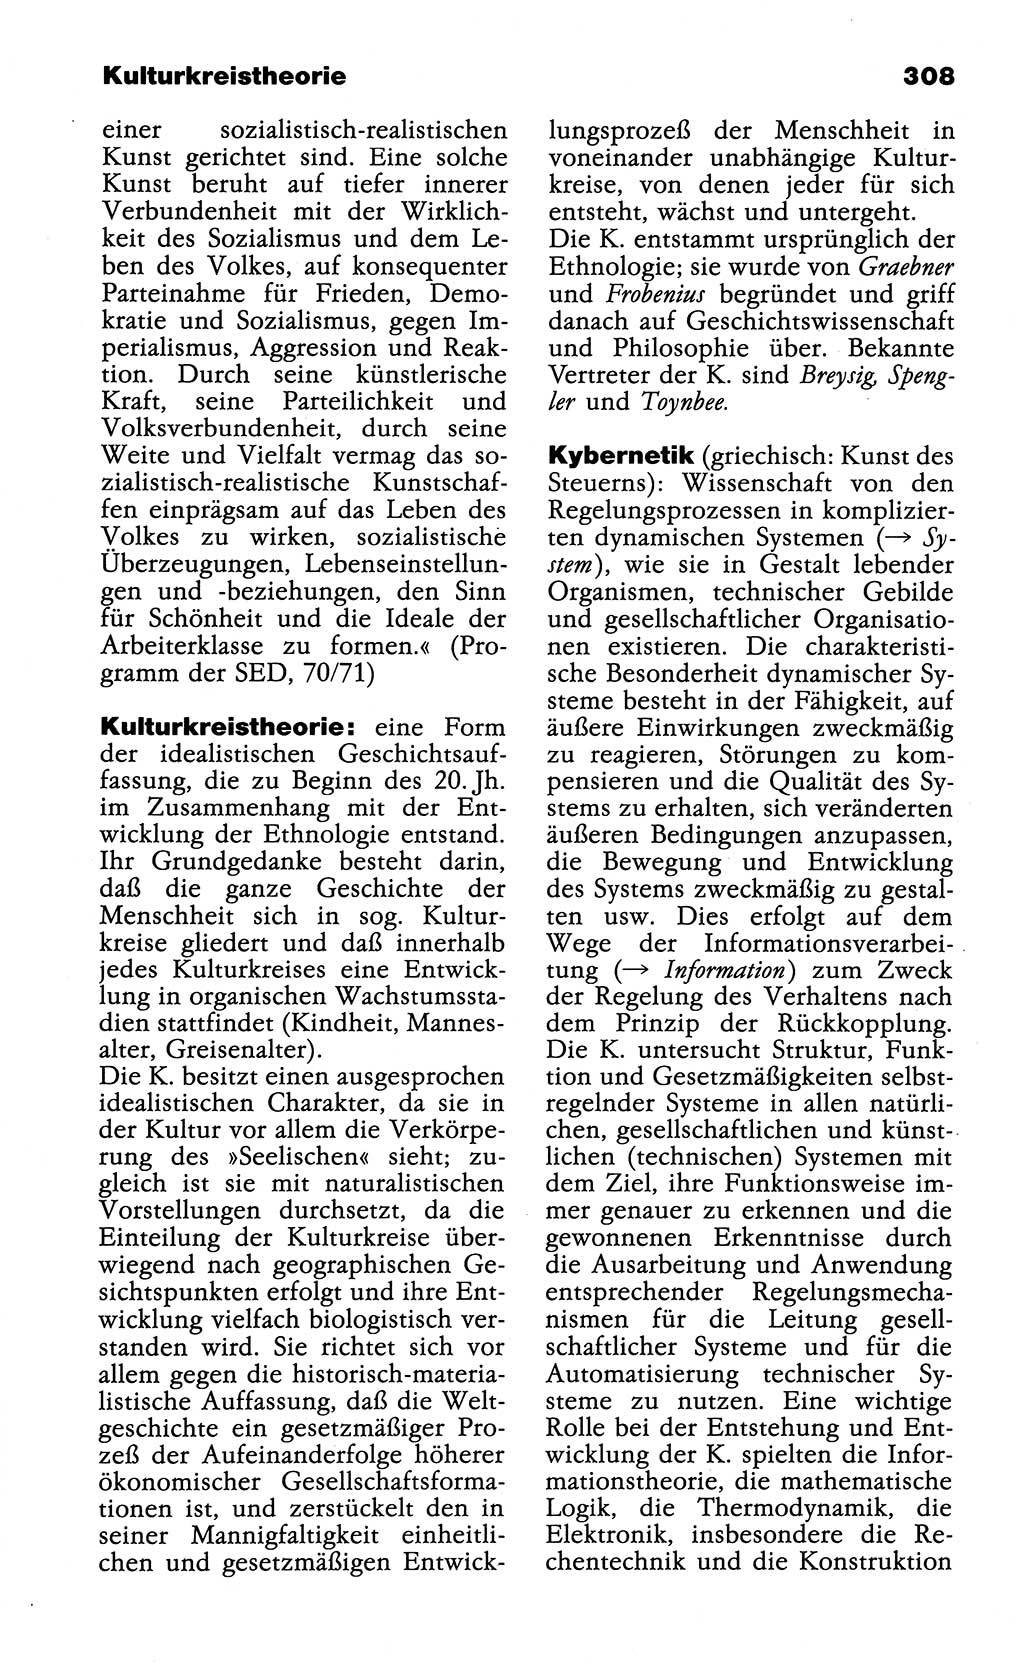 Wörterbuch der marxistisch-leninistischen Philosophie [Deutsche Demokratische Republik (DDR)] 1985, Seite 308 (Wb. ML Phil. DDR 1985, S. 308)